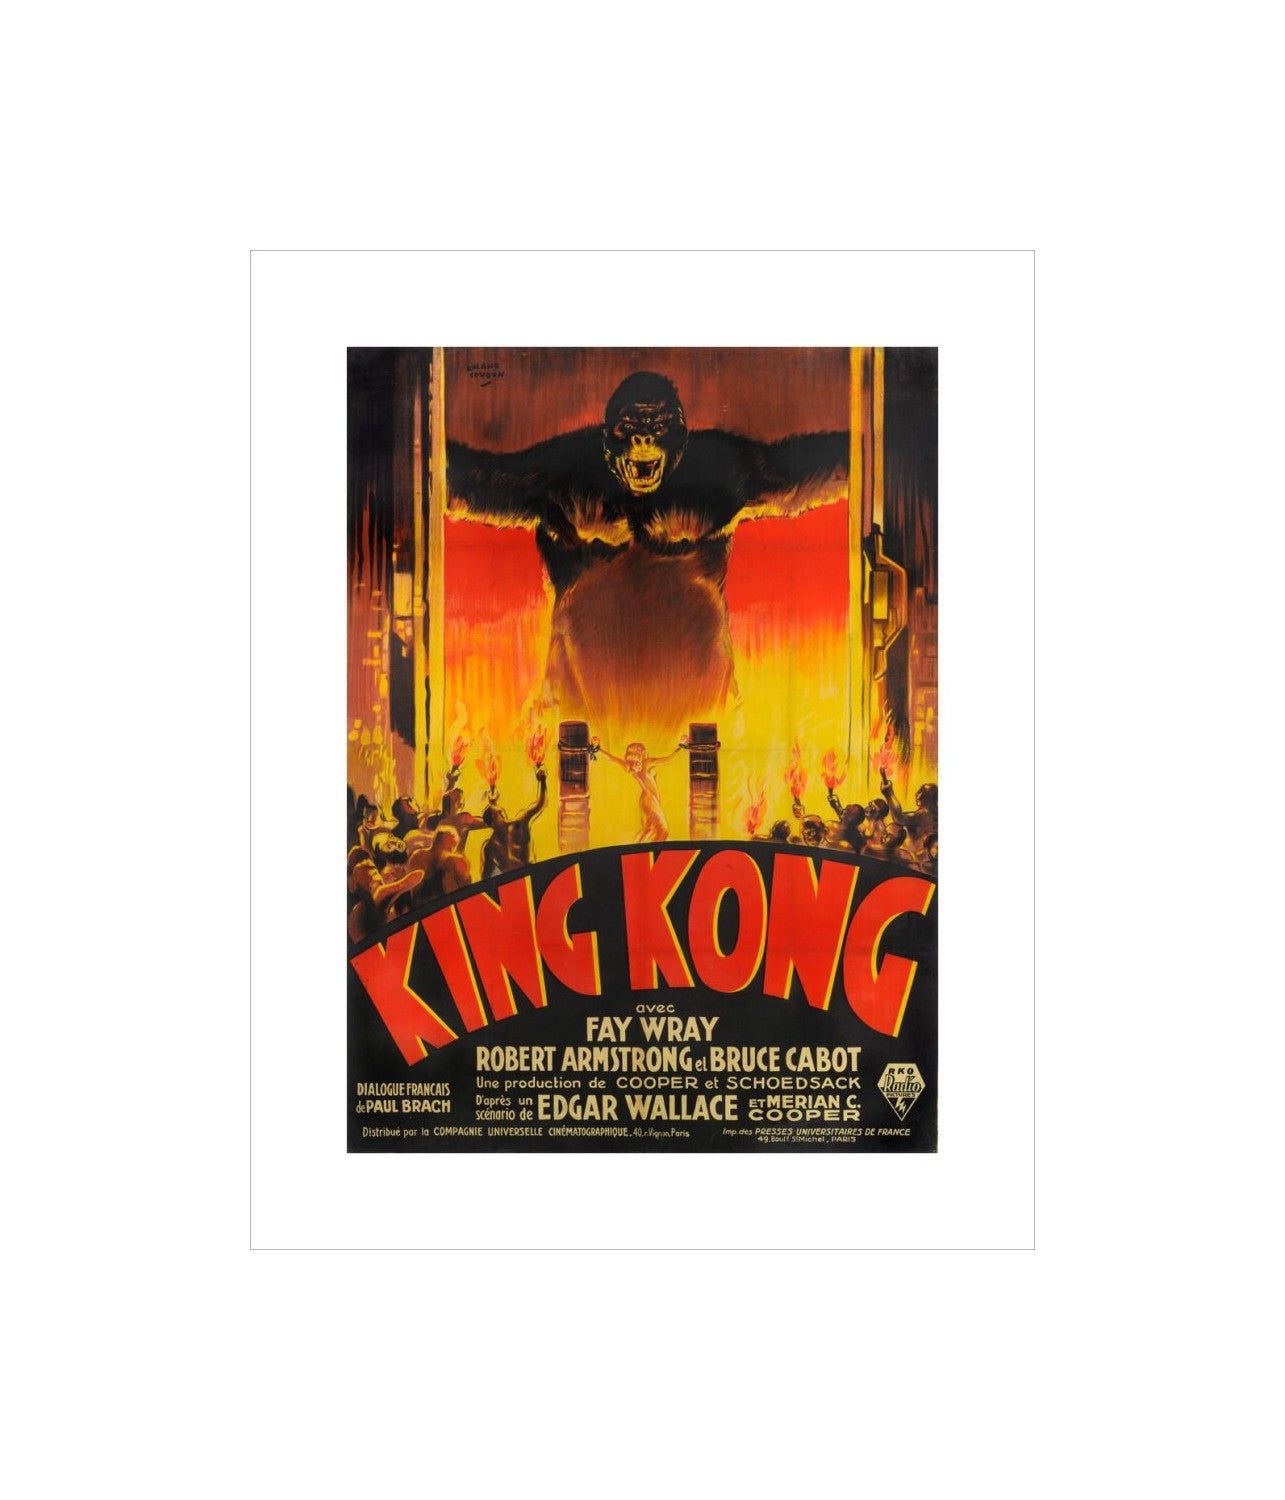 Stampa King Kong